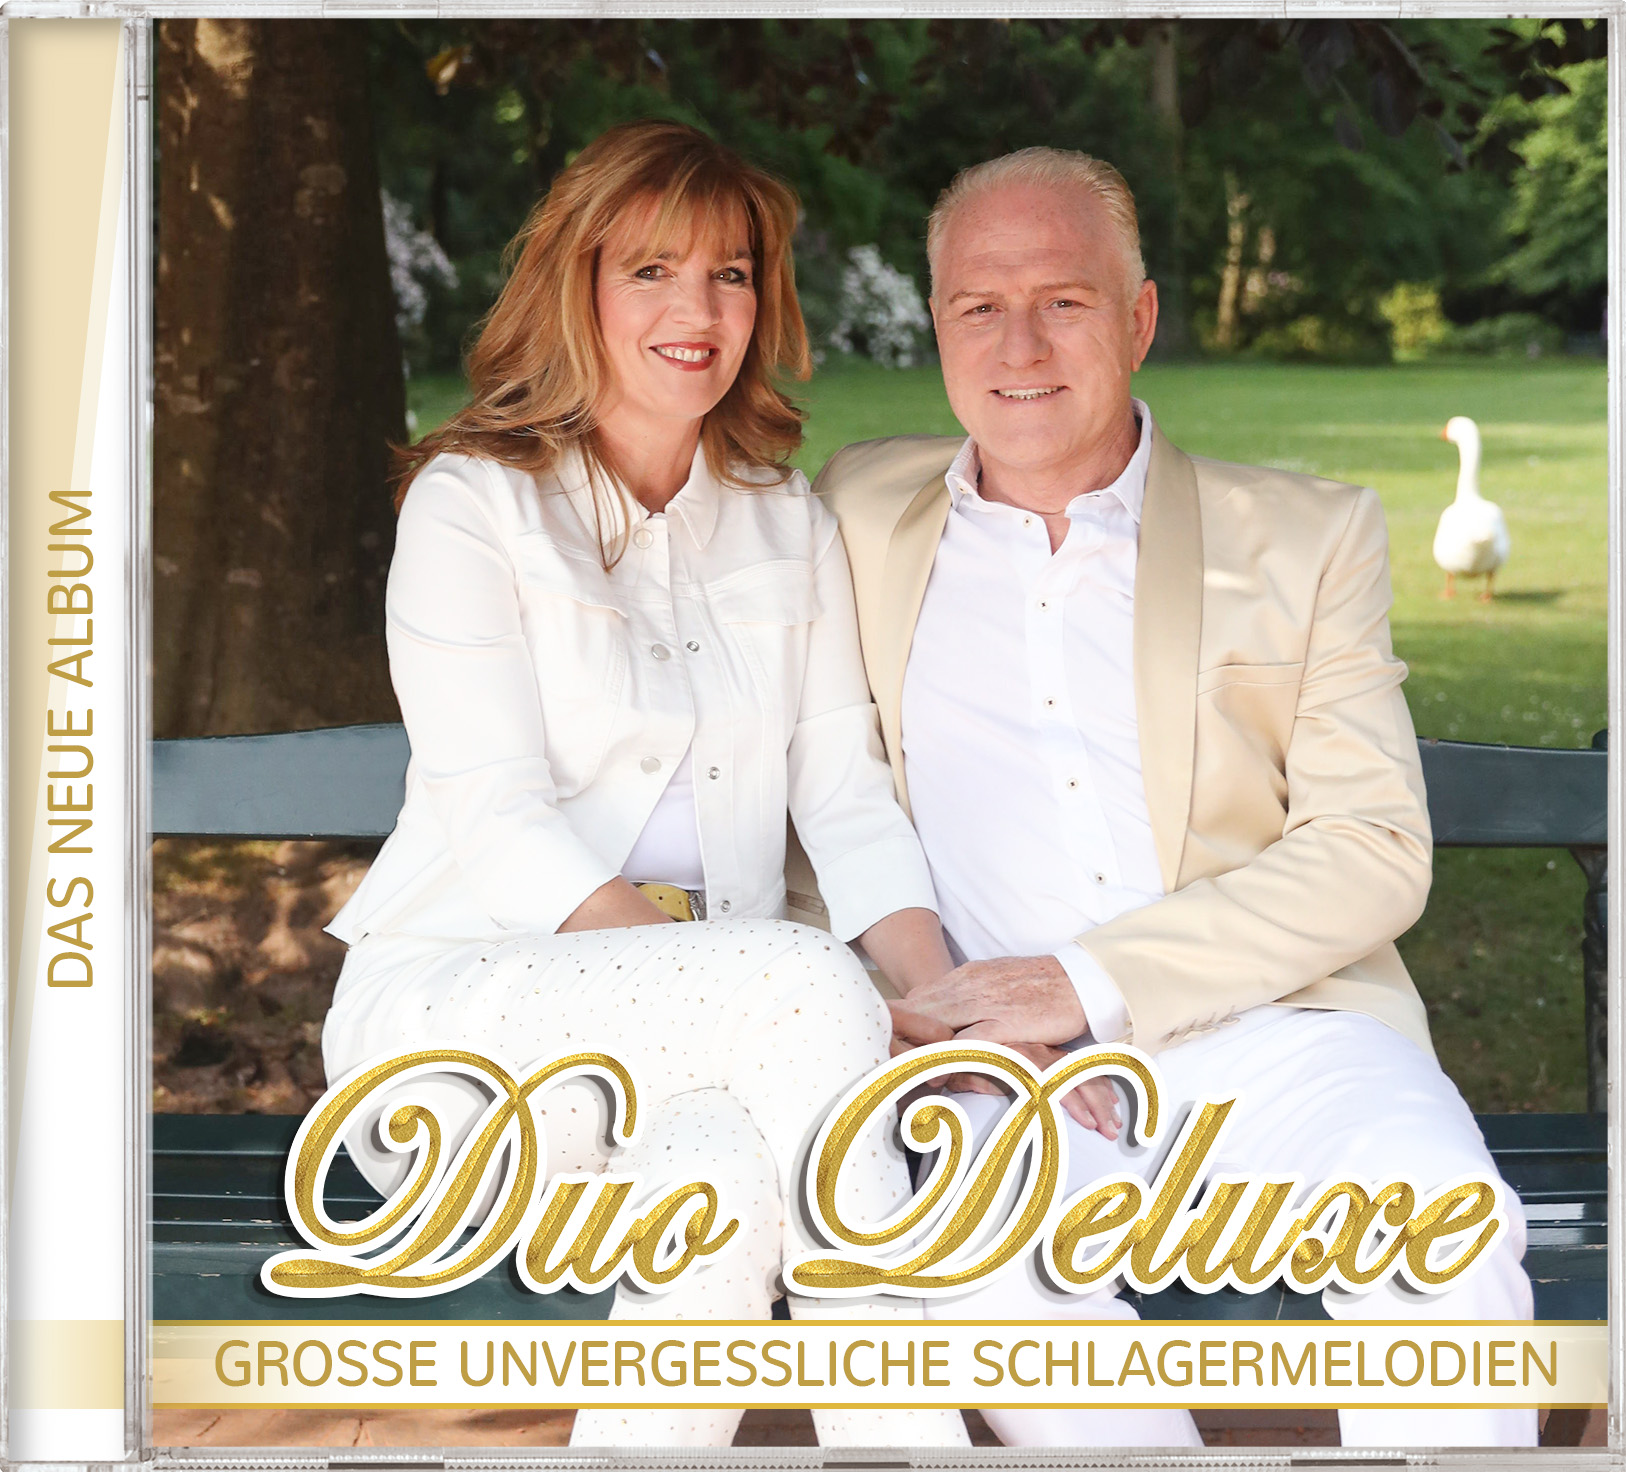 Duo Deluxe - Unvergessliche Schlagermelodien.jpg